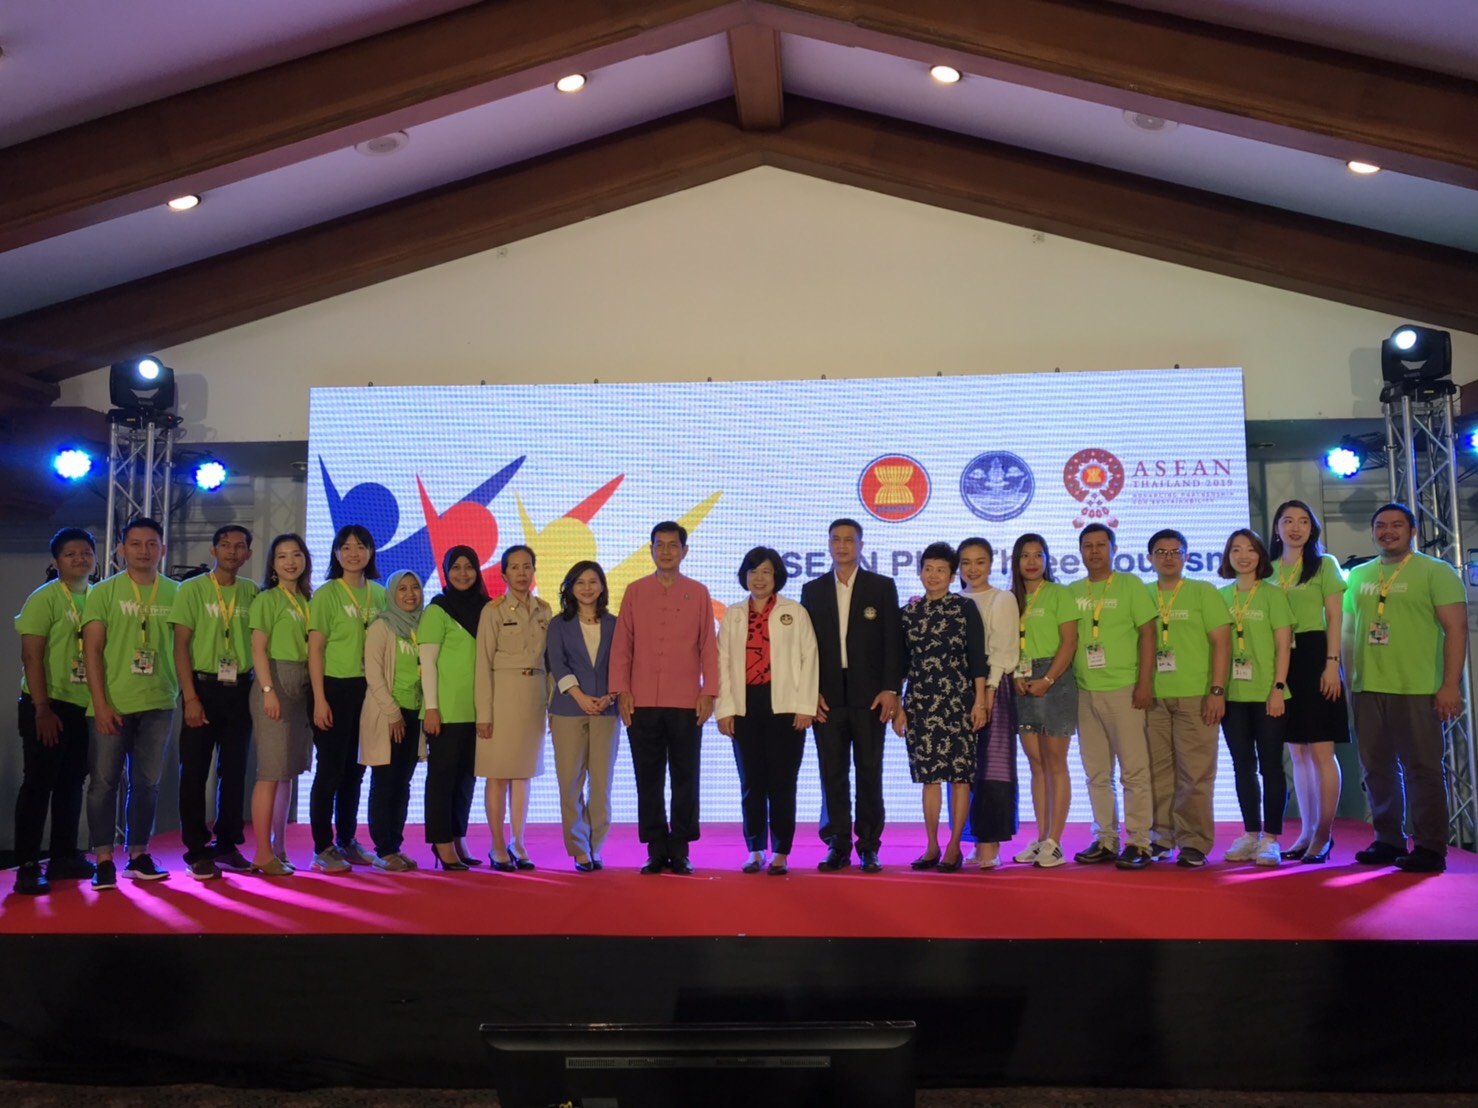 กระทรวงการท่องเที่ยวและกีฬา จัดงาน“ ASEAN Plus Three Tourism Youth Summit 2019”ที่จังหวัดเชัยงใหม่ หวังปลูกฝังแนวคิดการพัฒนาการท่องเที่ยวและส่งเสริมนวัตกรรมด้านการท่องเที่ยวรองรับยุคเทคโนโลยีดิจิทอล